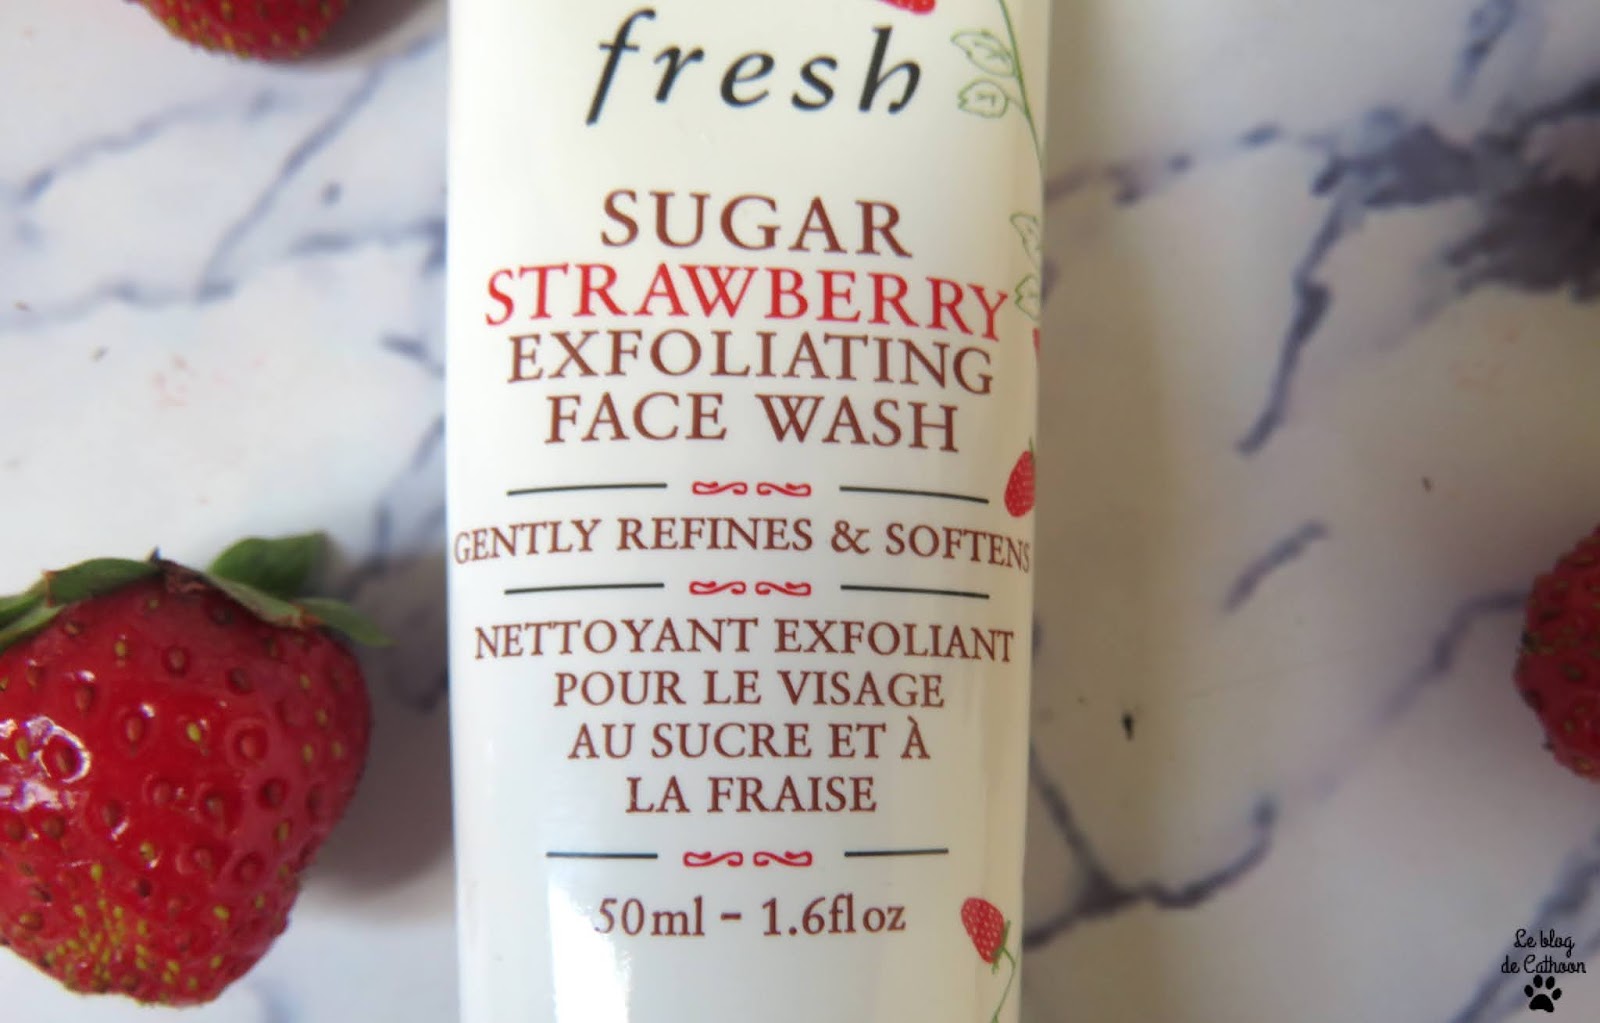 Sugar Strawberry Exfoliating Face Wash - Fresh